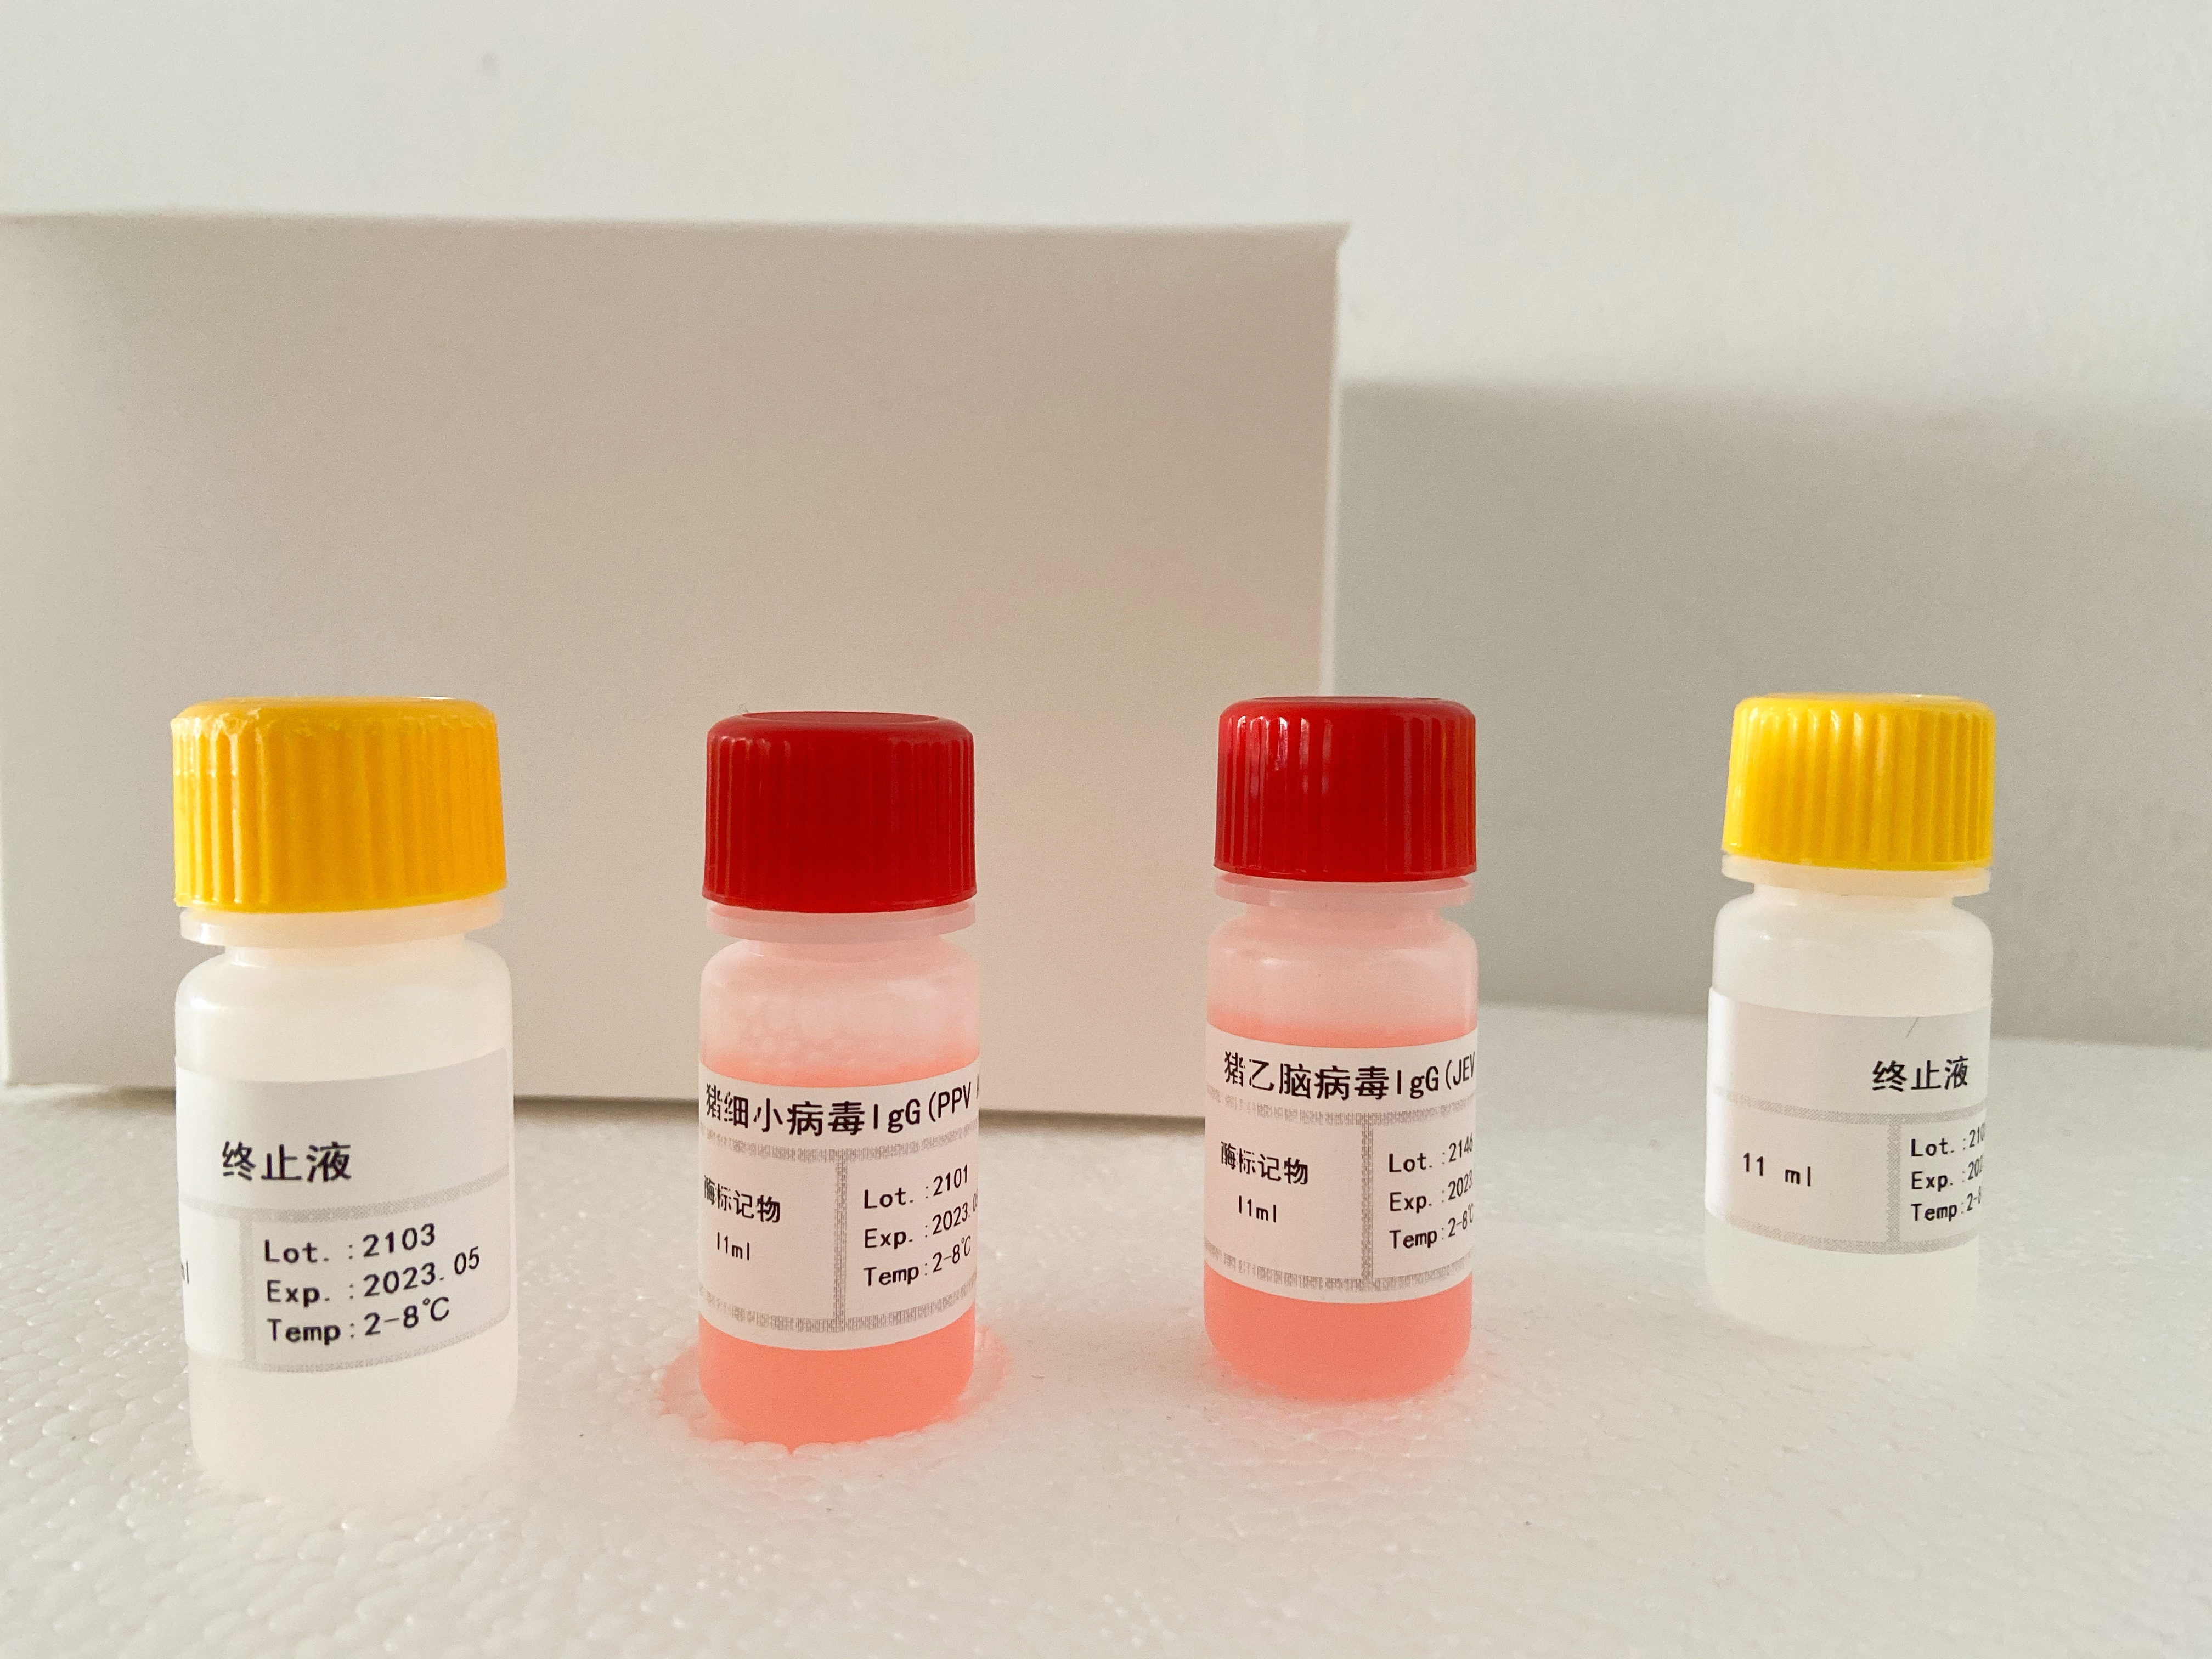 小鼠胶质细胞系来源的神经营养因子(GDNF)检测试剂盒